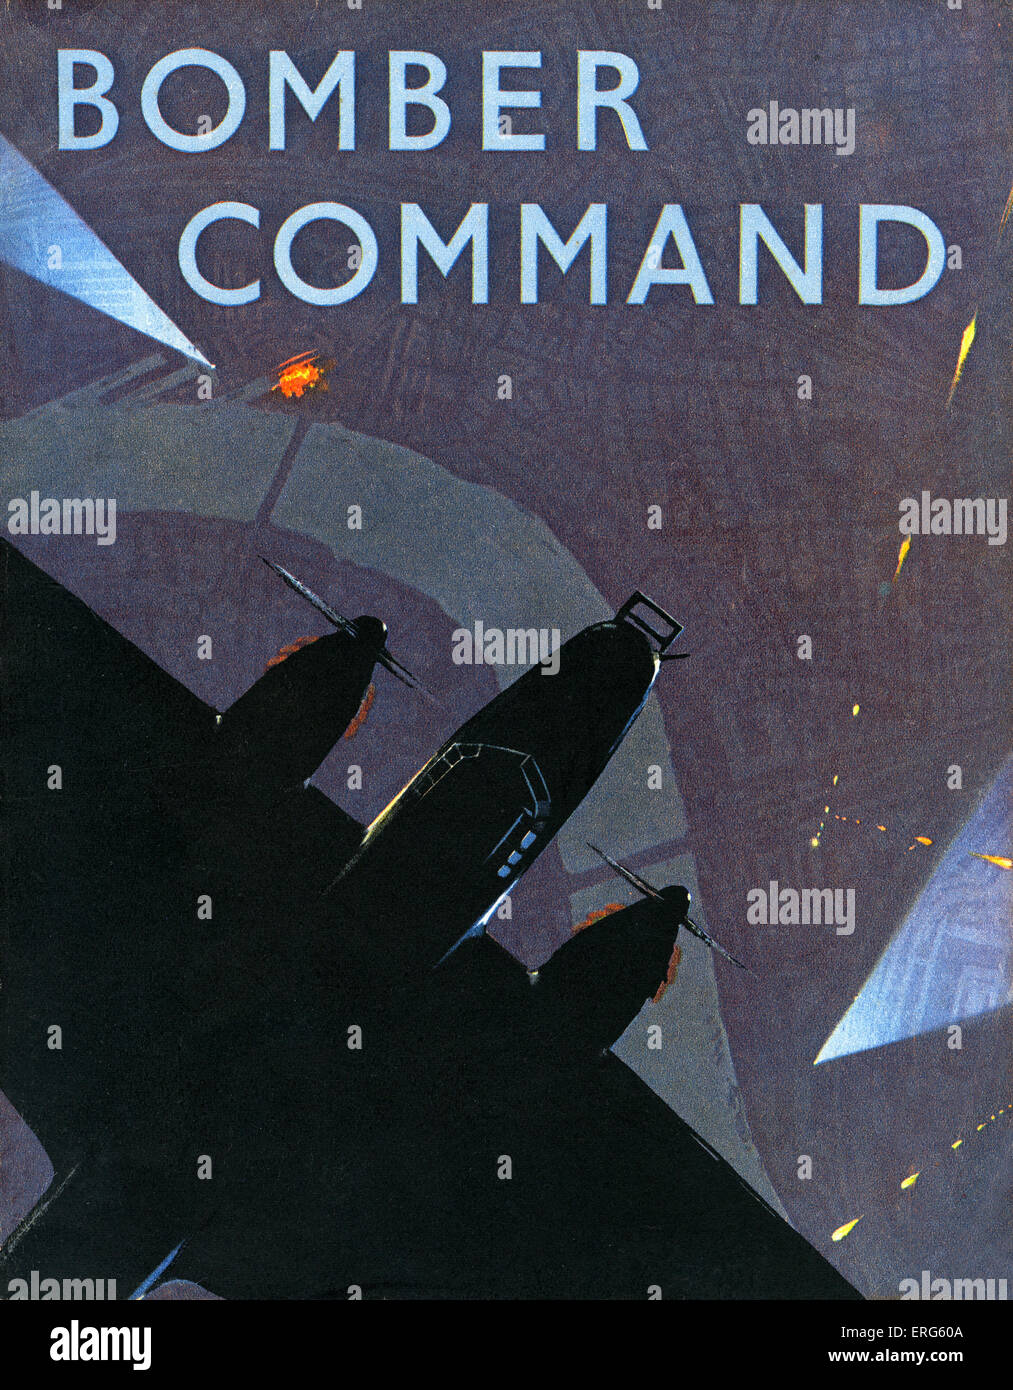 Bomber Command - Guerra Mundial 2 libro de información. Cubierta frontal. Subtitulada: "El Ministerio de aire cuenta del Comando Bombardero 's ofensivo Foto de stock